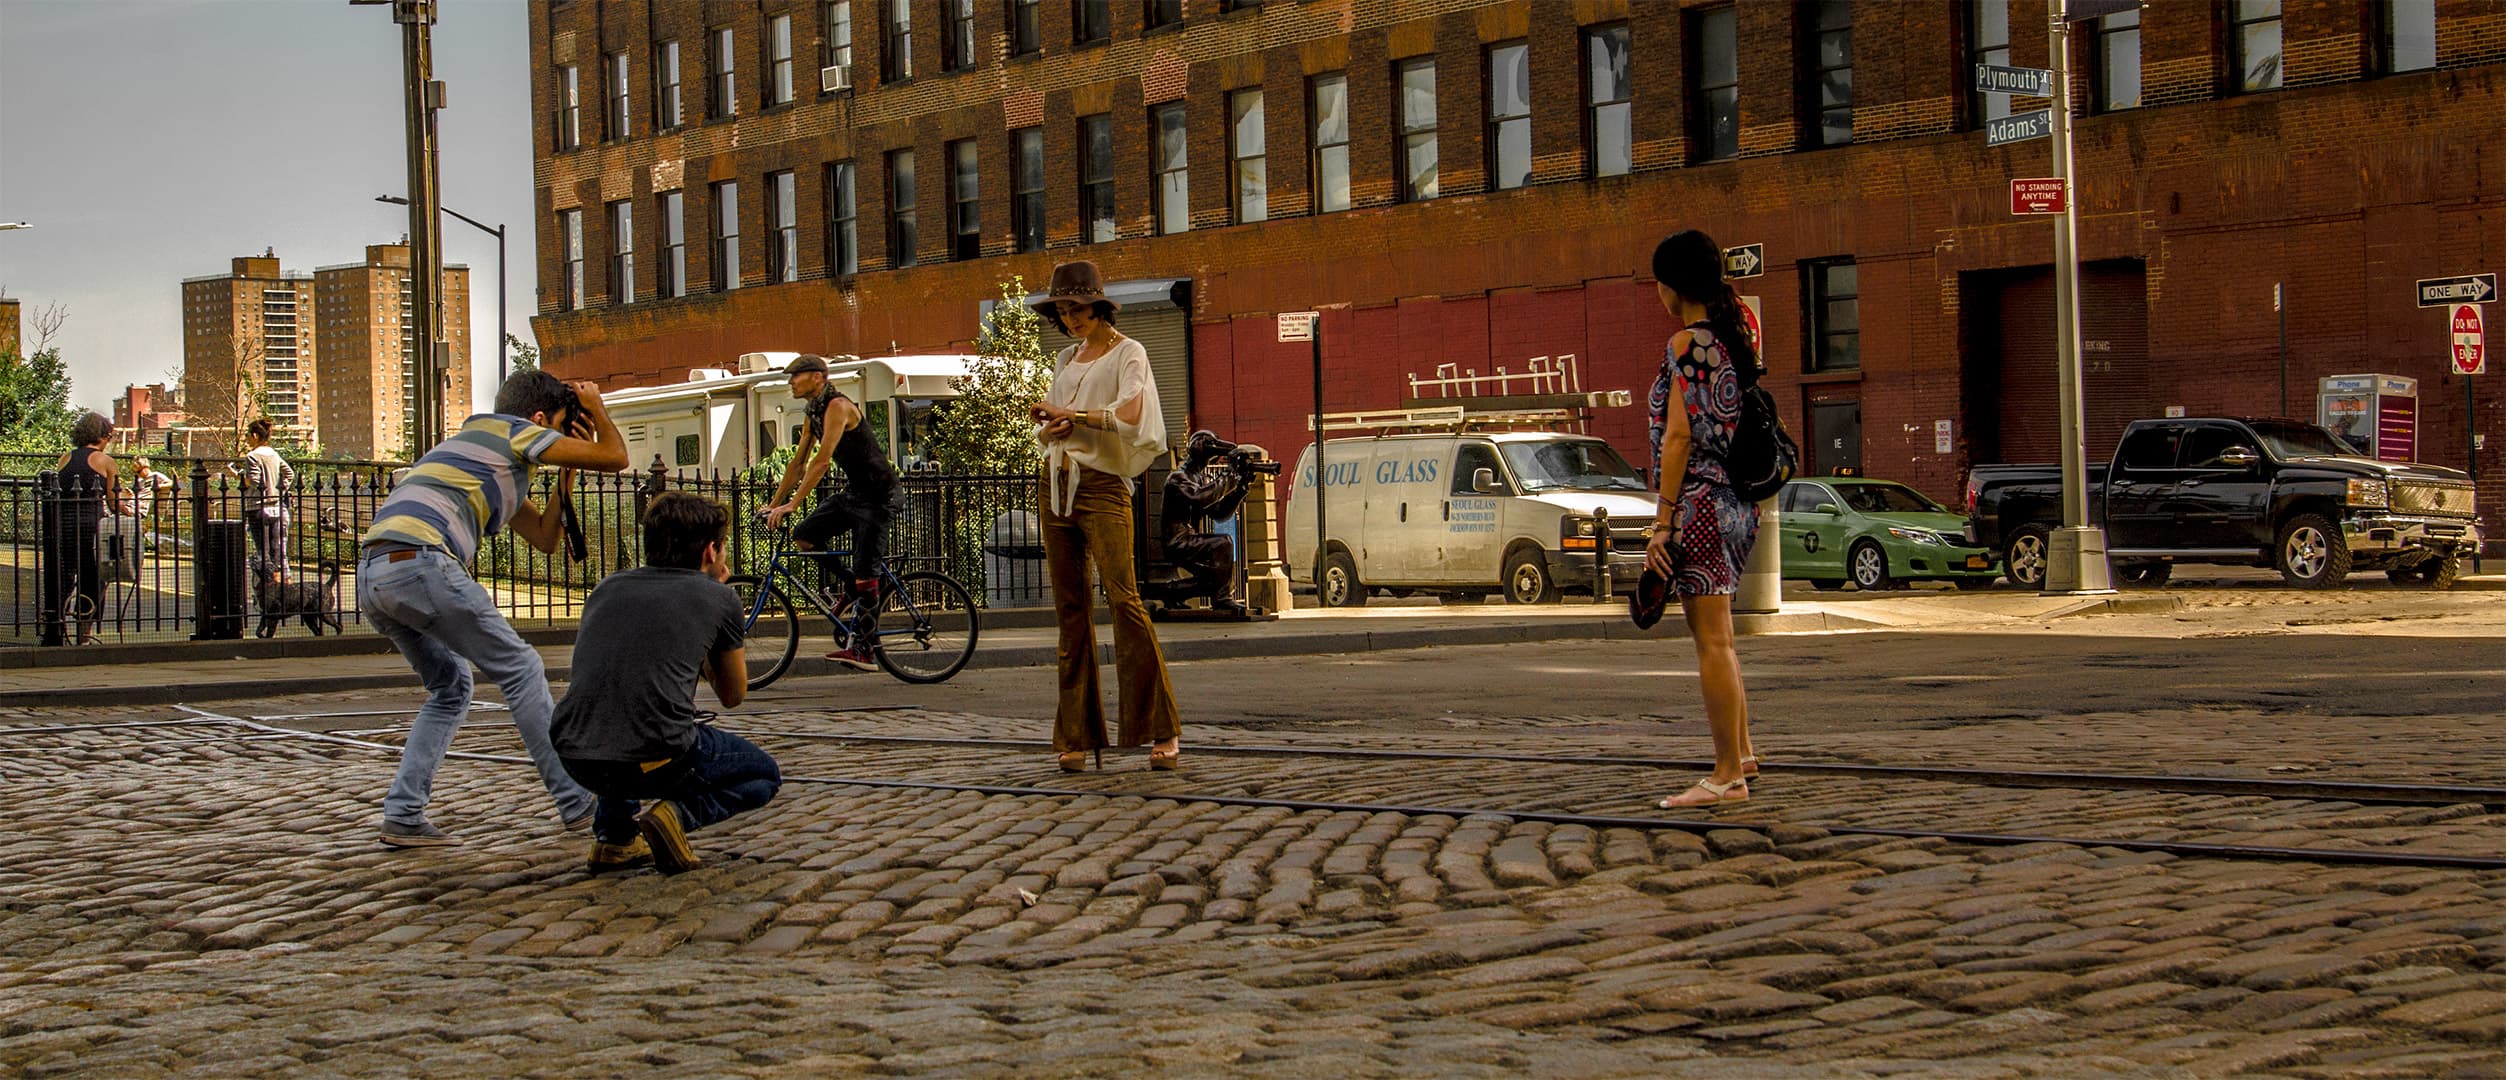 Photoshoot, Brooklyn Heights (2016)